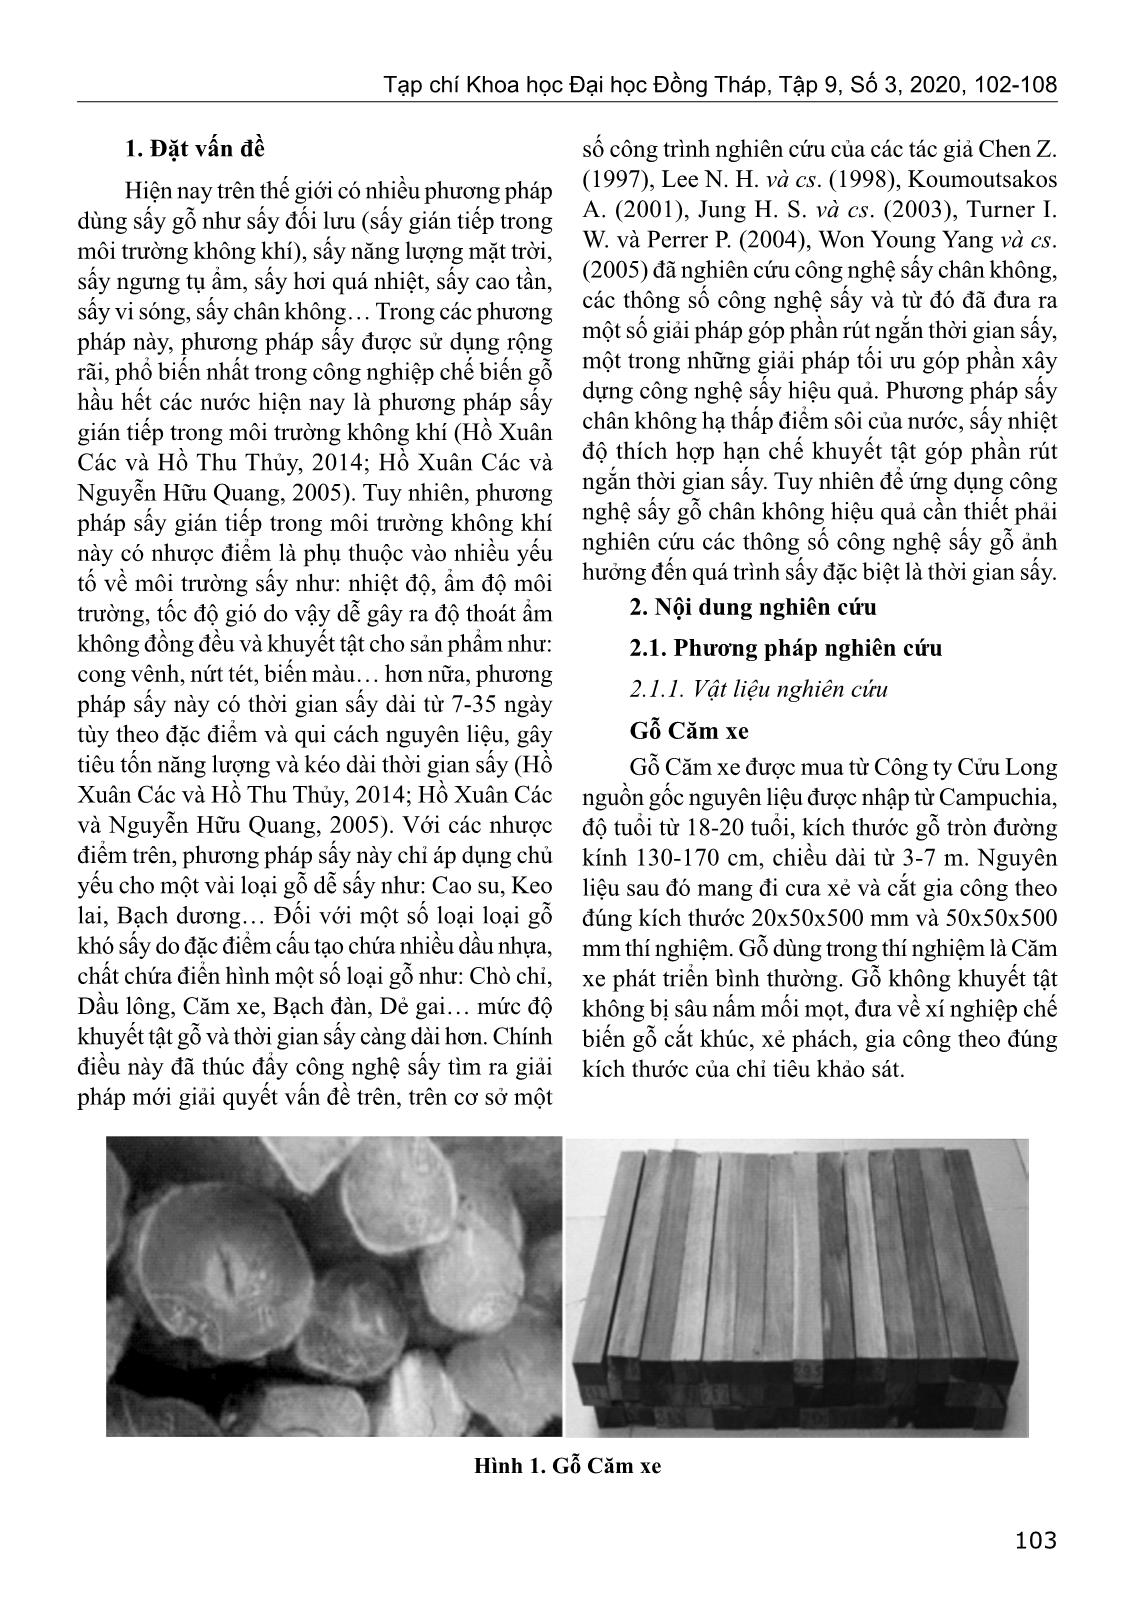 Nghiên cứu thông số công nghệ sấy chân không gỗ căm xe (Xylia xylocarpa) trang 2